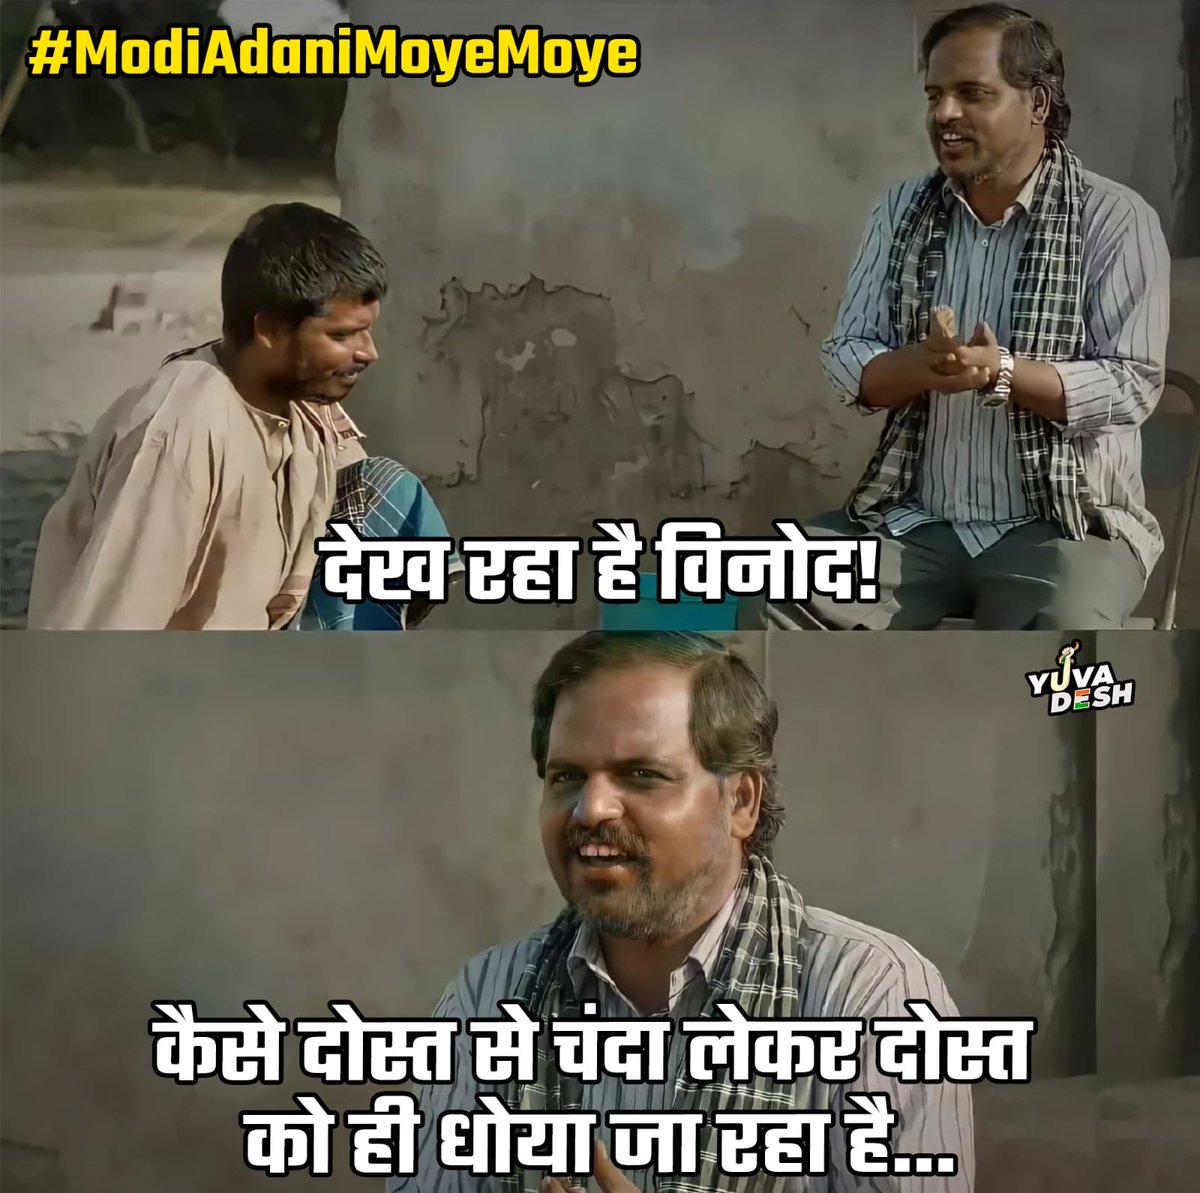 दोस्त दोस्त ना रहा

#ModiAdaniMoyeMoye